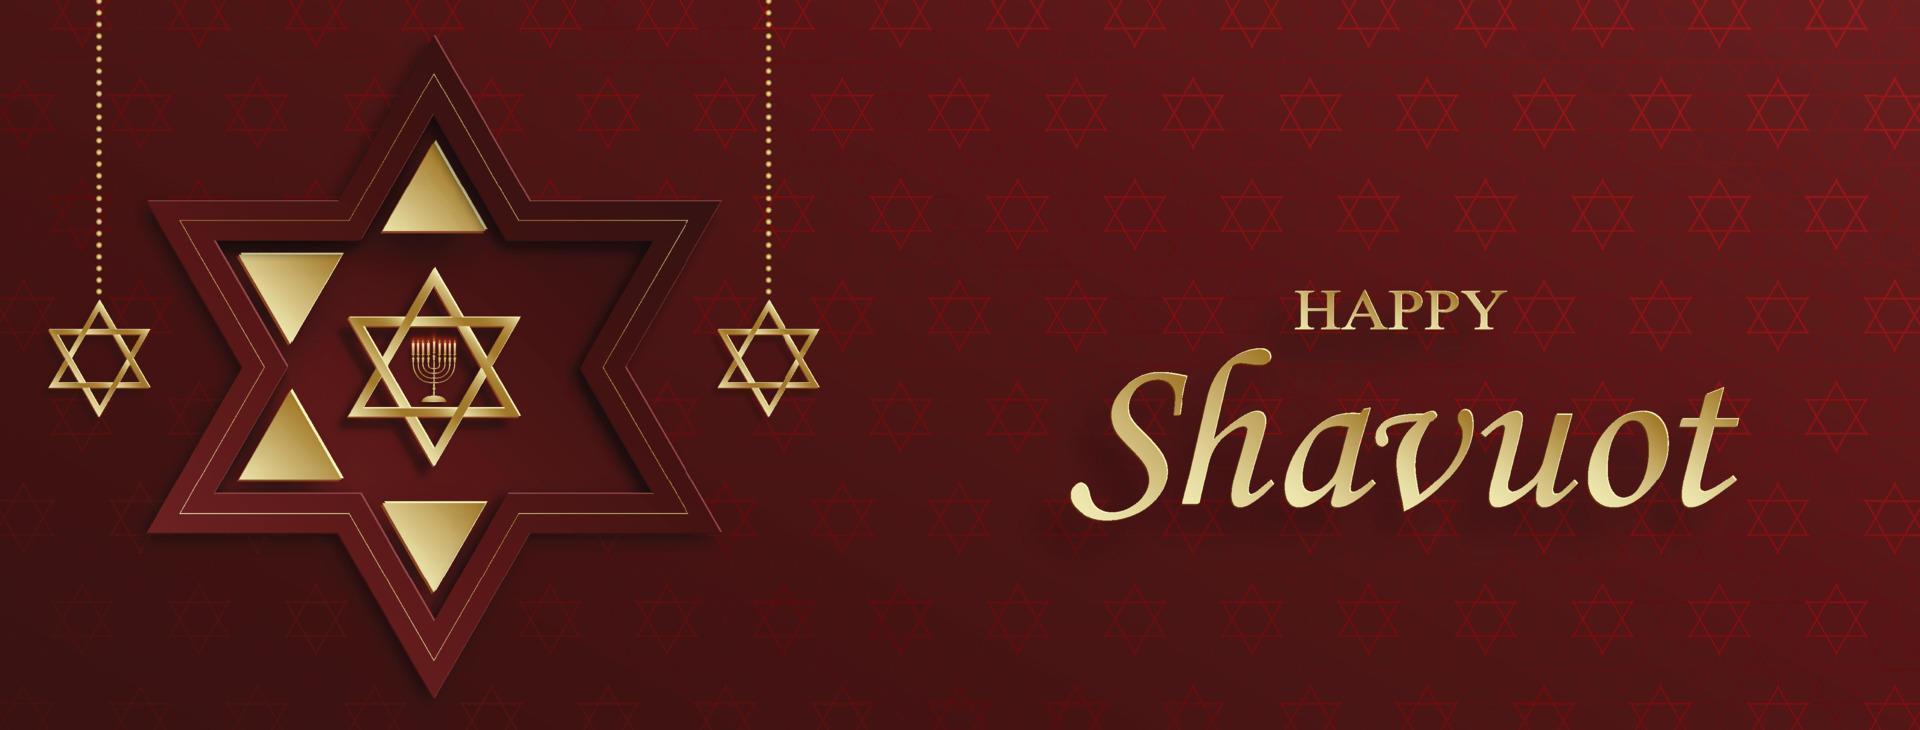 carte de shavuot heureuse avec des symboles juifs agréables et créatifs vecteur